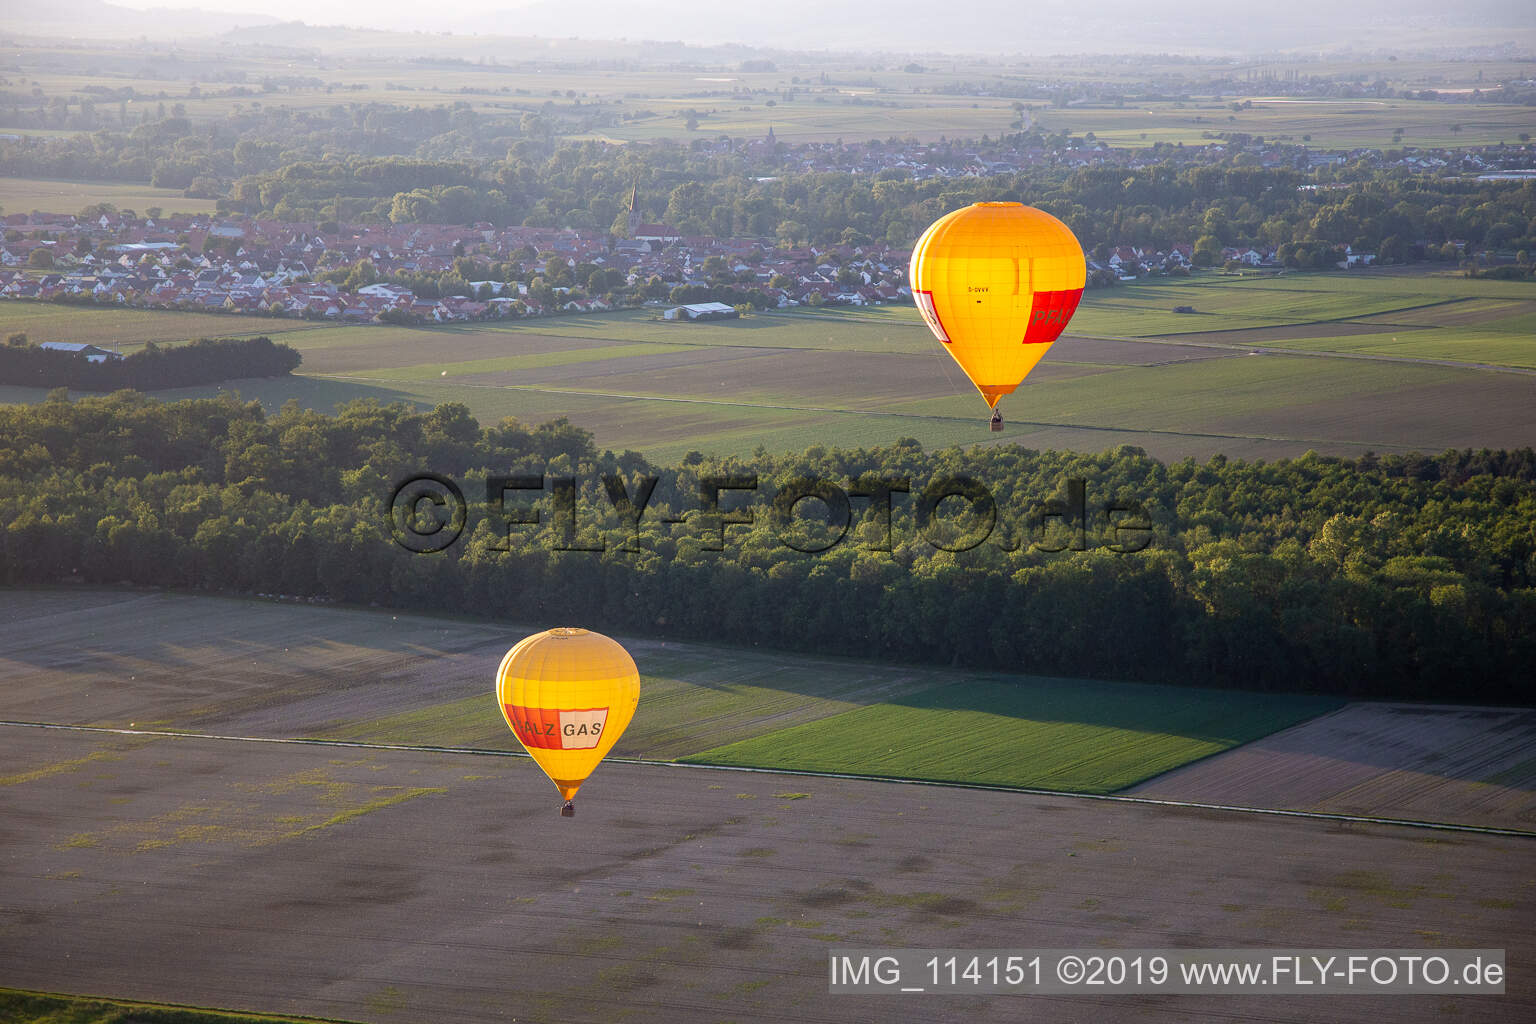 Photographie aérienne de Ballons jumeaux Pfalzgas à Kandel dans le département Rhénanie-Palatinat, Allemagne